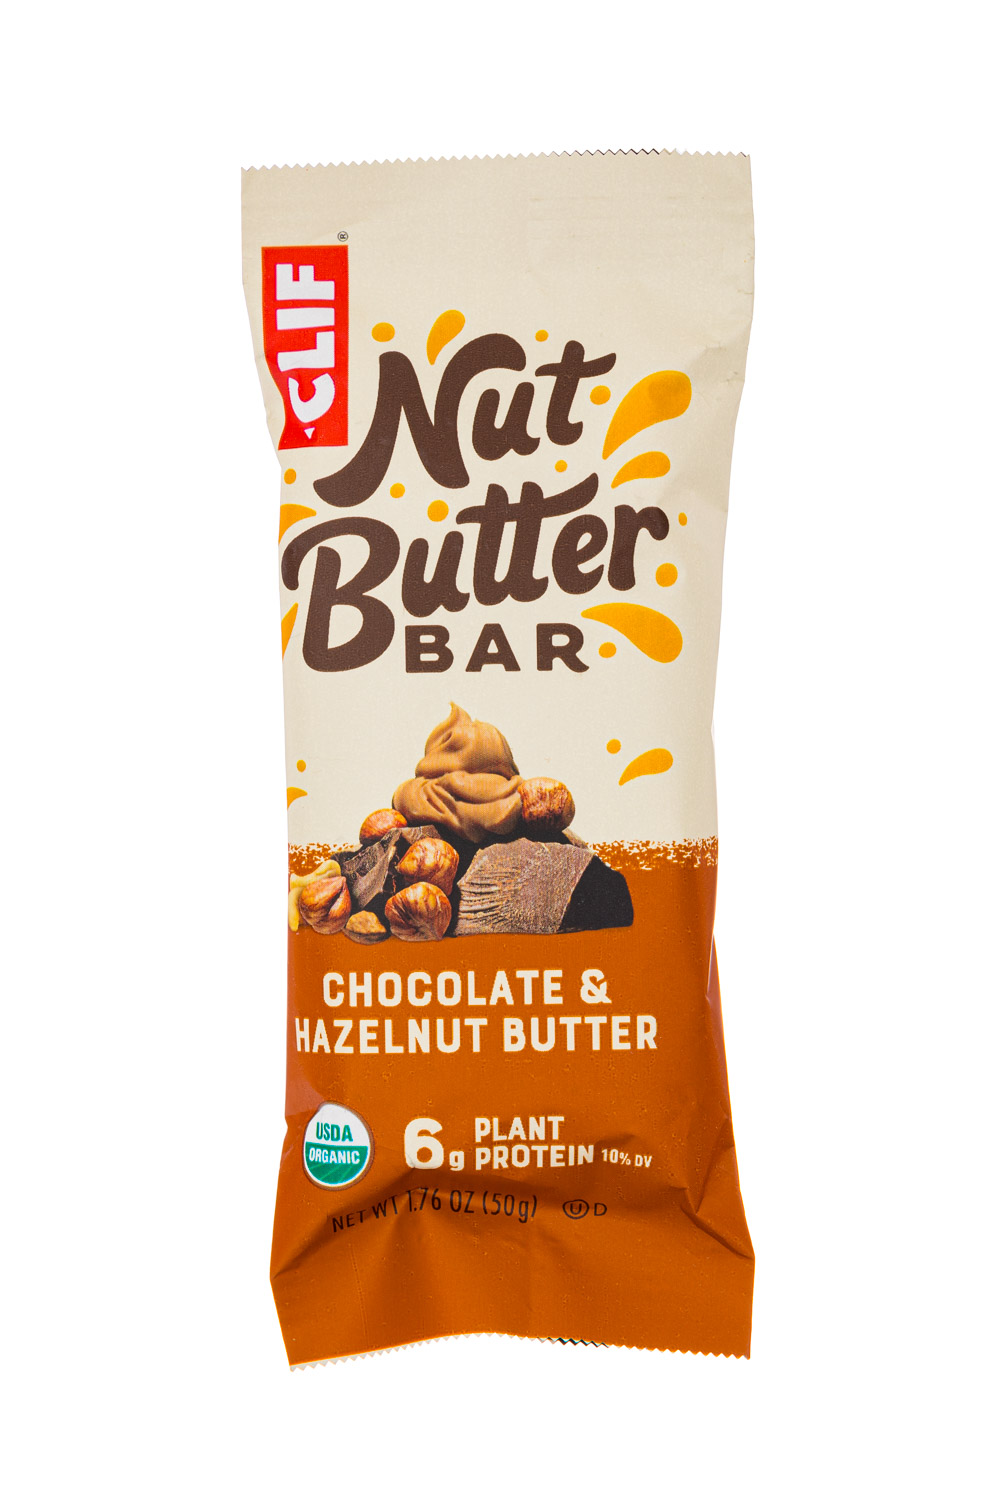 Chocolate & Hazelnut Butter - Nut Butter Bars 2020